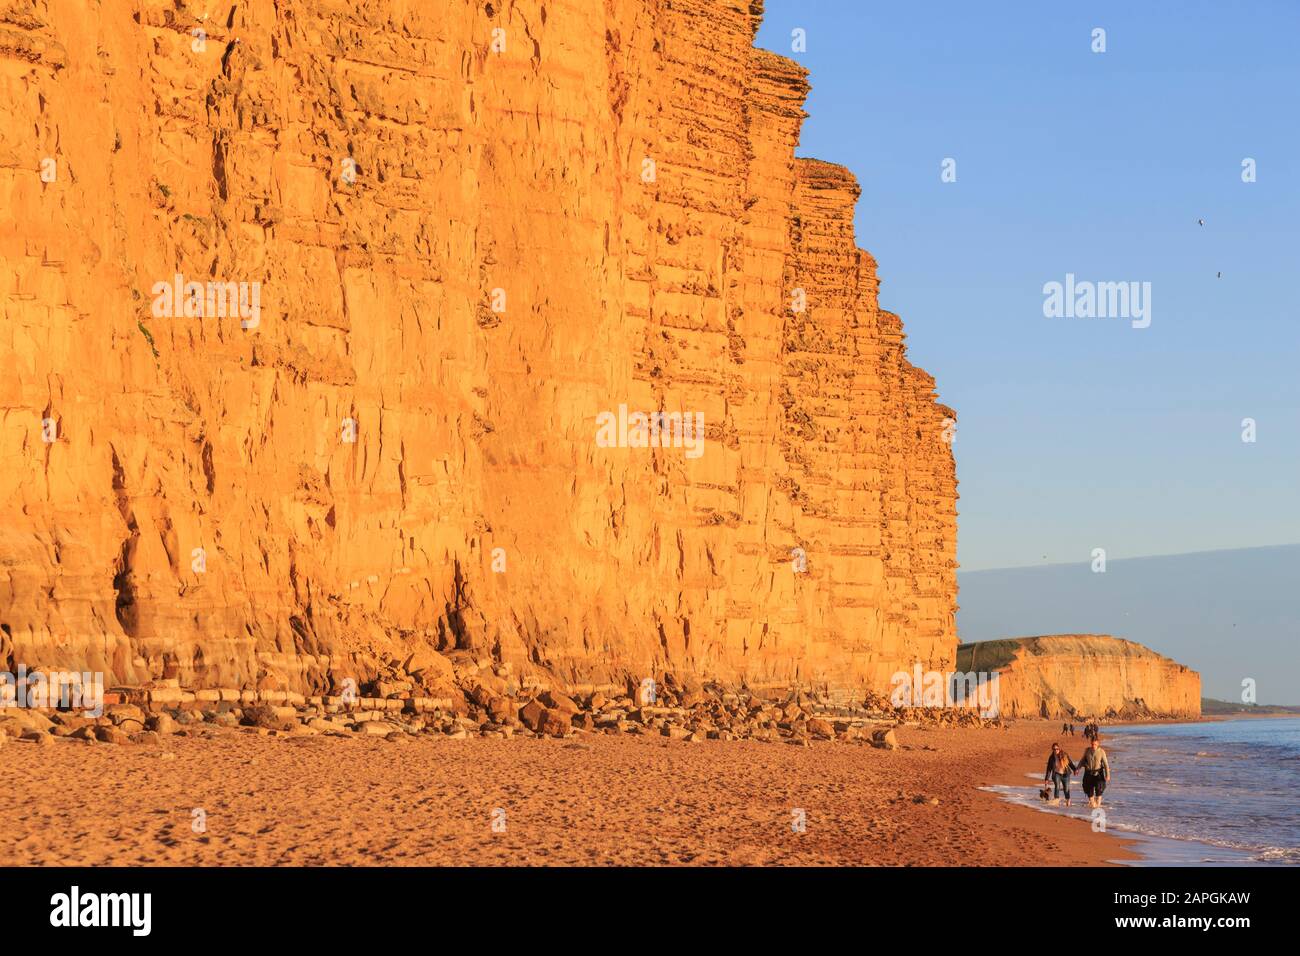 Plage de l'ouest de la baie de l'ouest de la falaise de grès jaune lumière du soir au sud de la côte jurassique du Dorset england uk go Banque D'Images